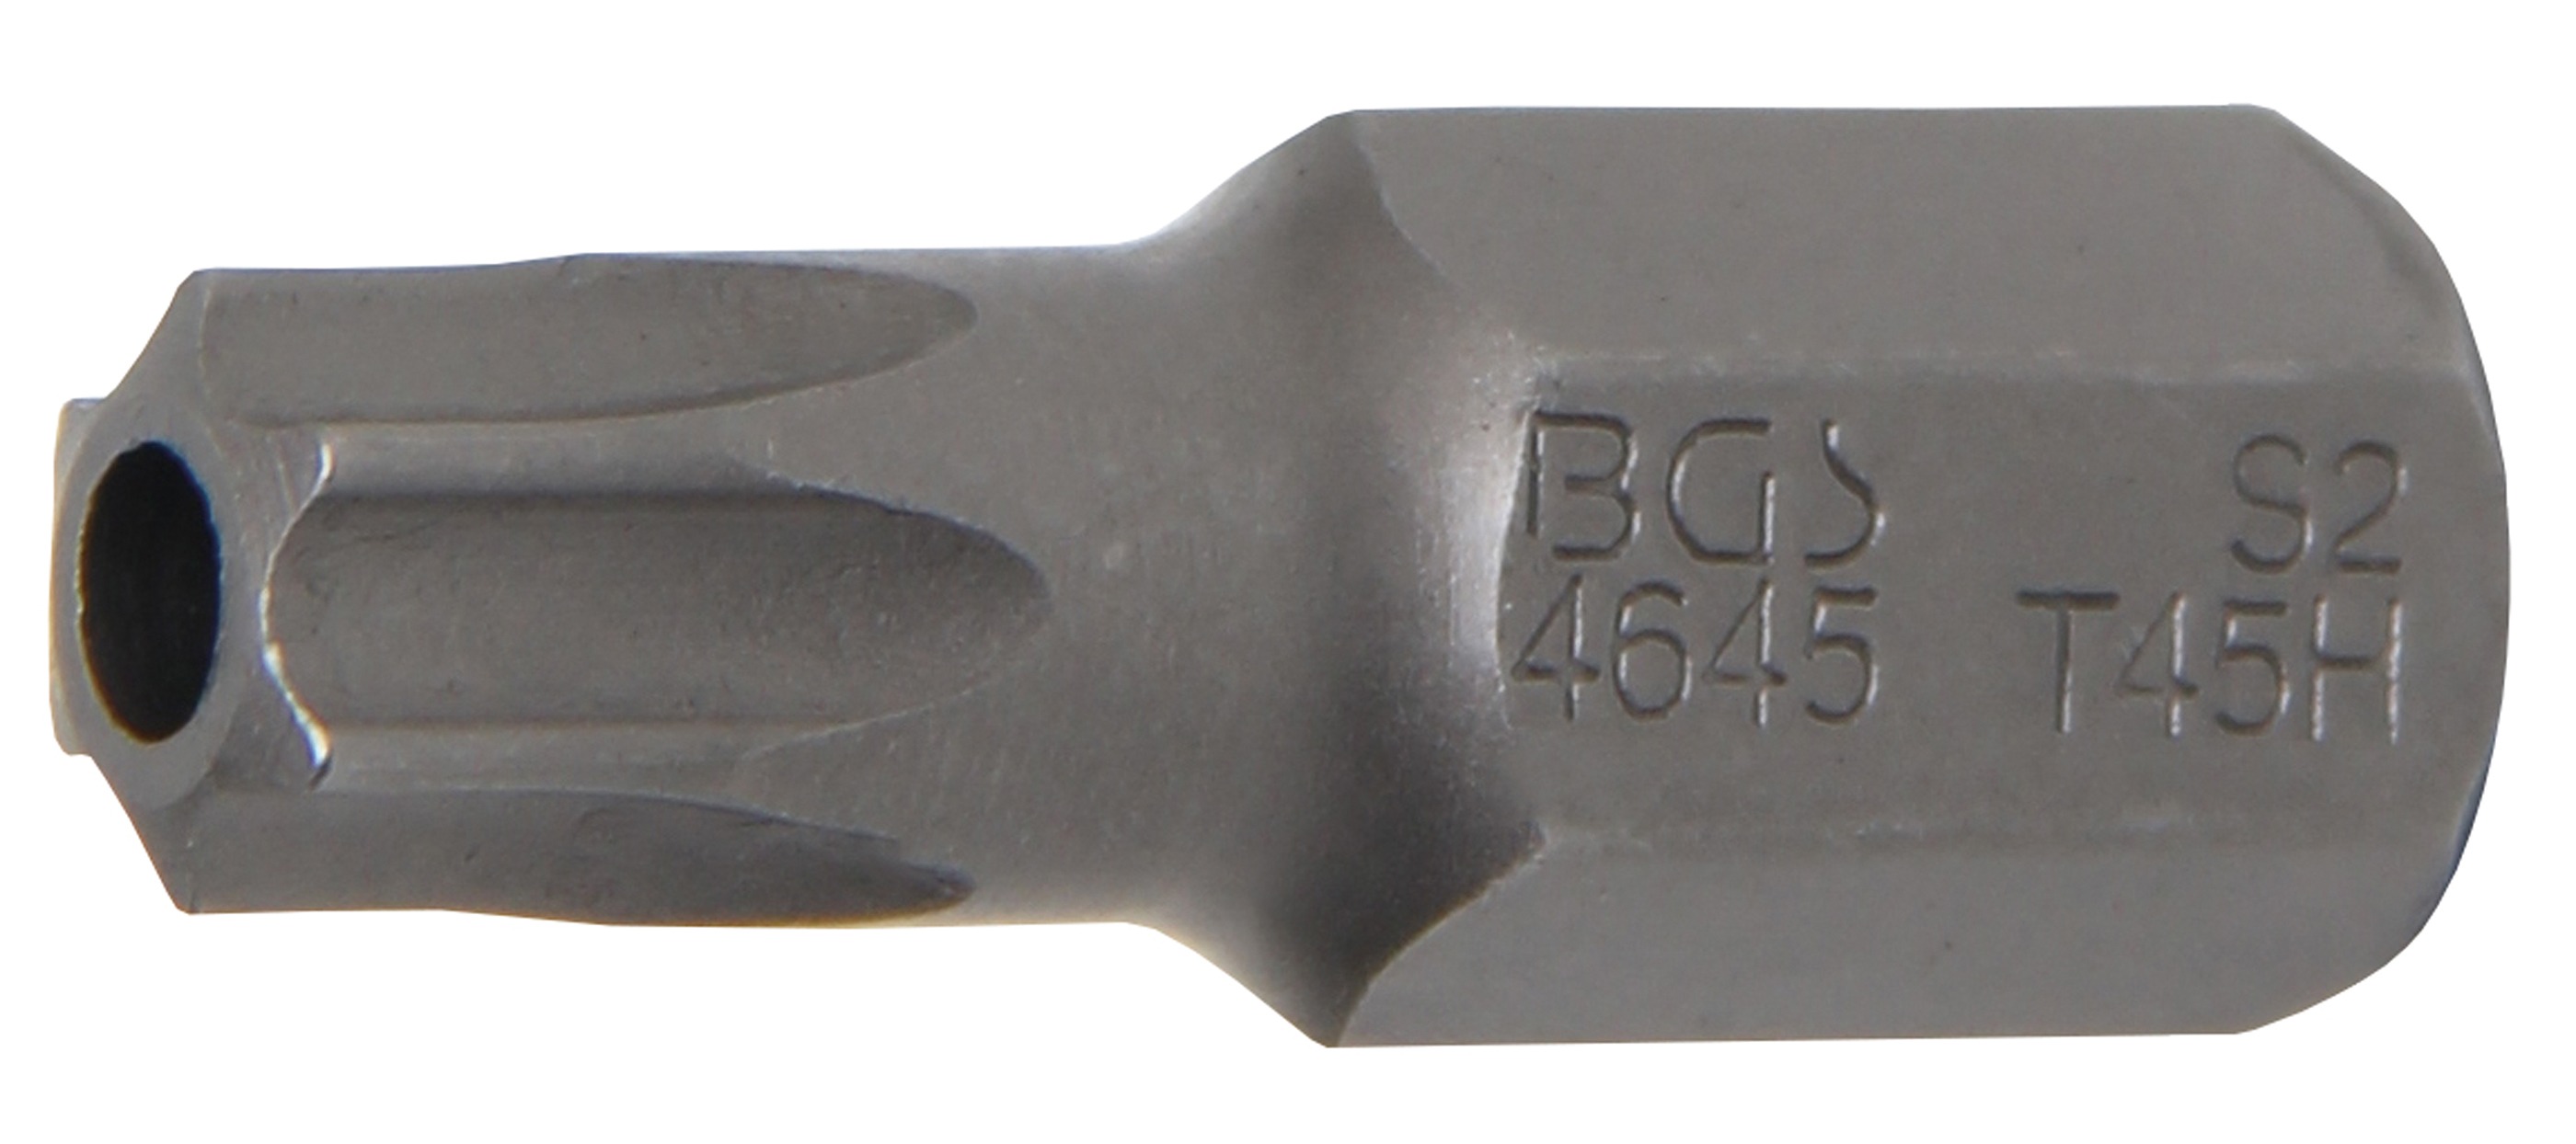 BGS 4645 Bit Torx T45 cu gaura de securizare, lungime 30mm, antrenare 10mm(3/8")